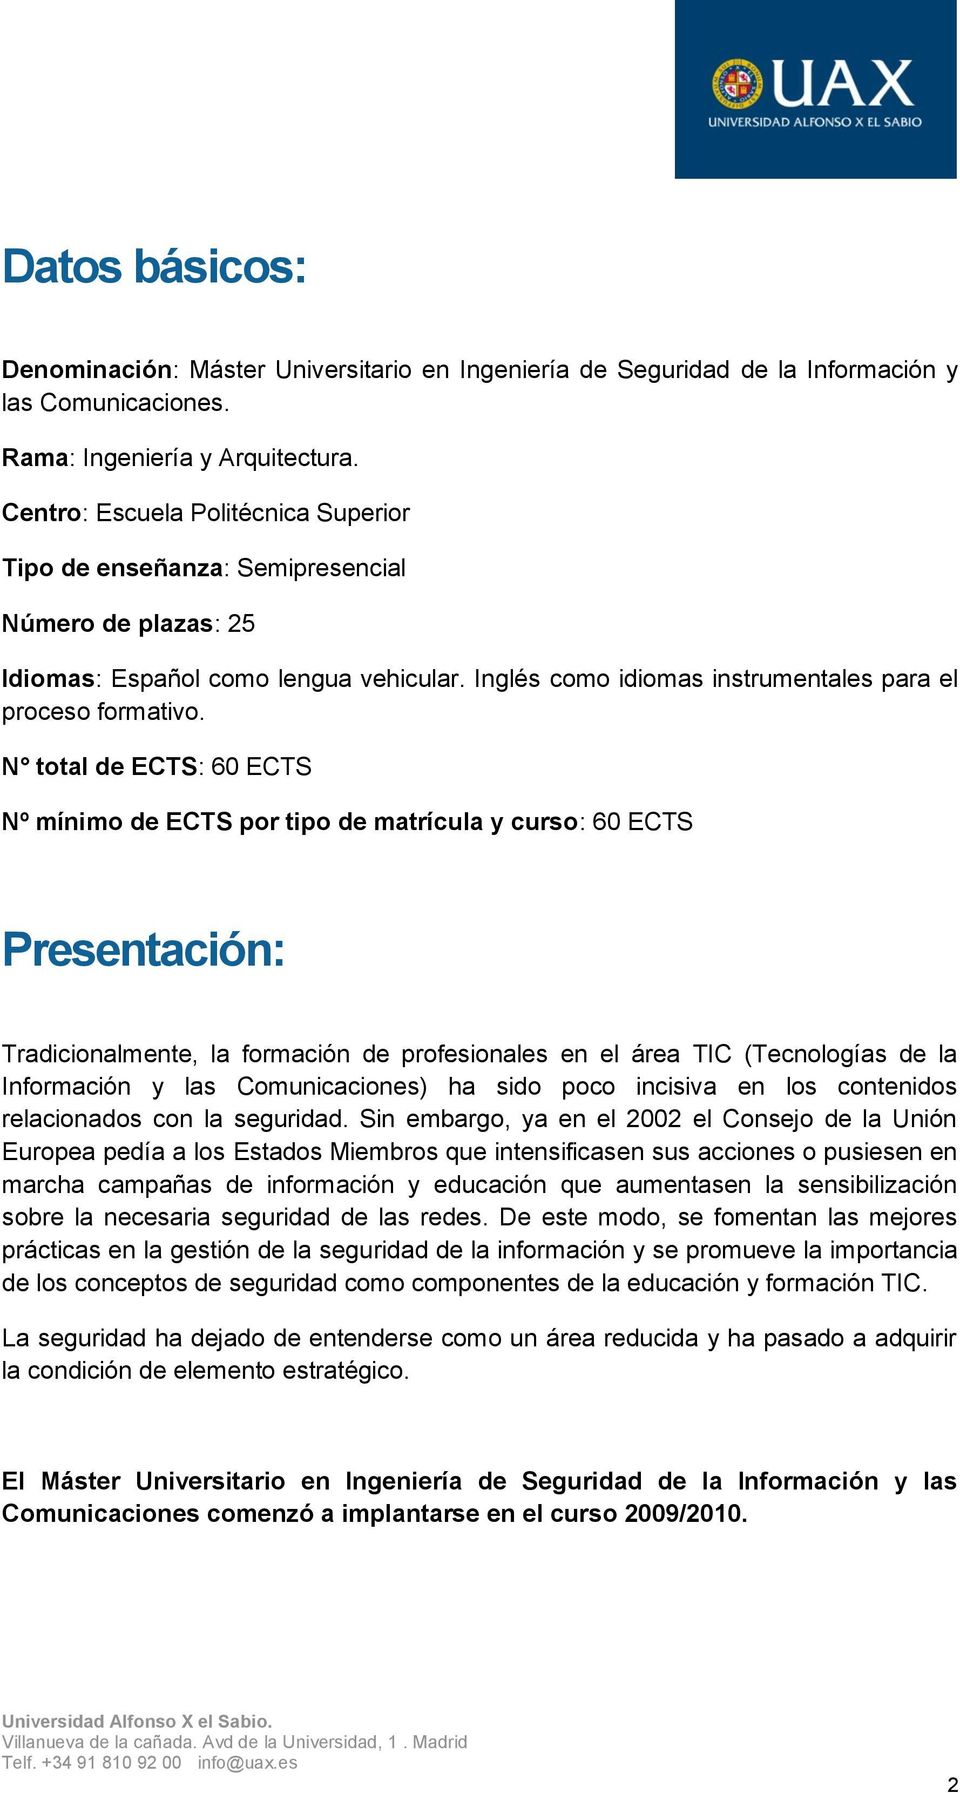 N total de ECTS: 60 ECTS Nº mínimo de ECTS por tipo de matrícula y curso: 60 ECTS Presentación: Tradicionalmente, la formación de profesionales en el área TIC (Tecnologías de la Información y las